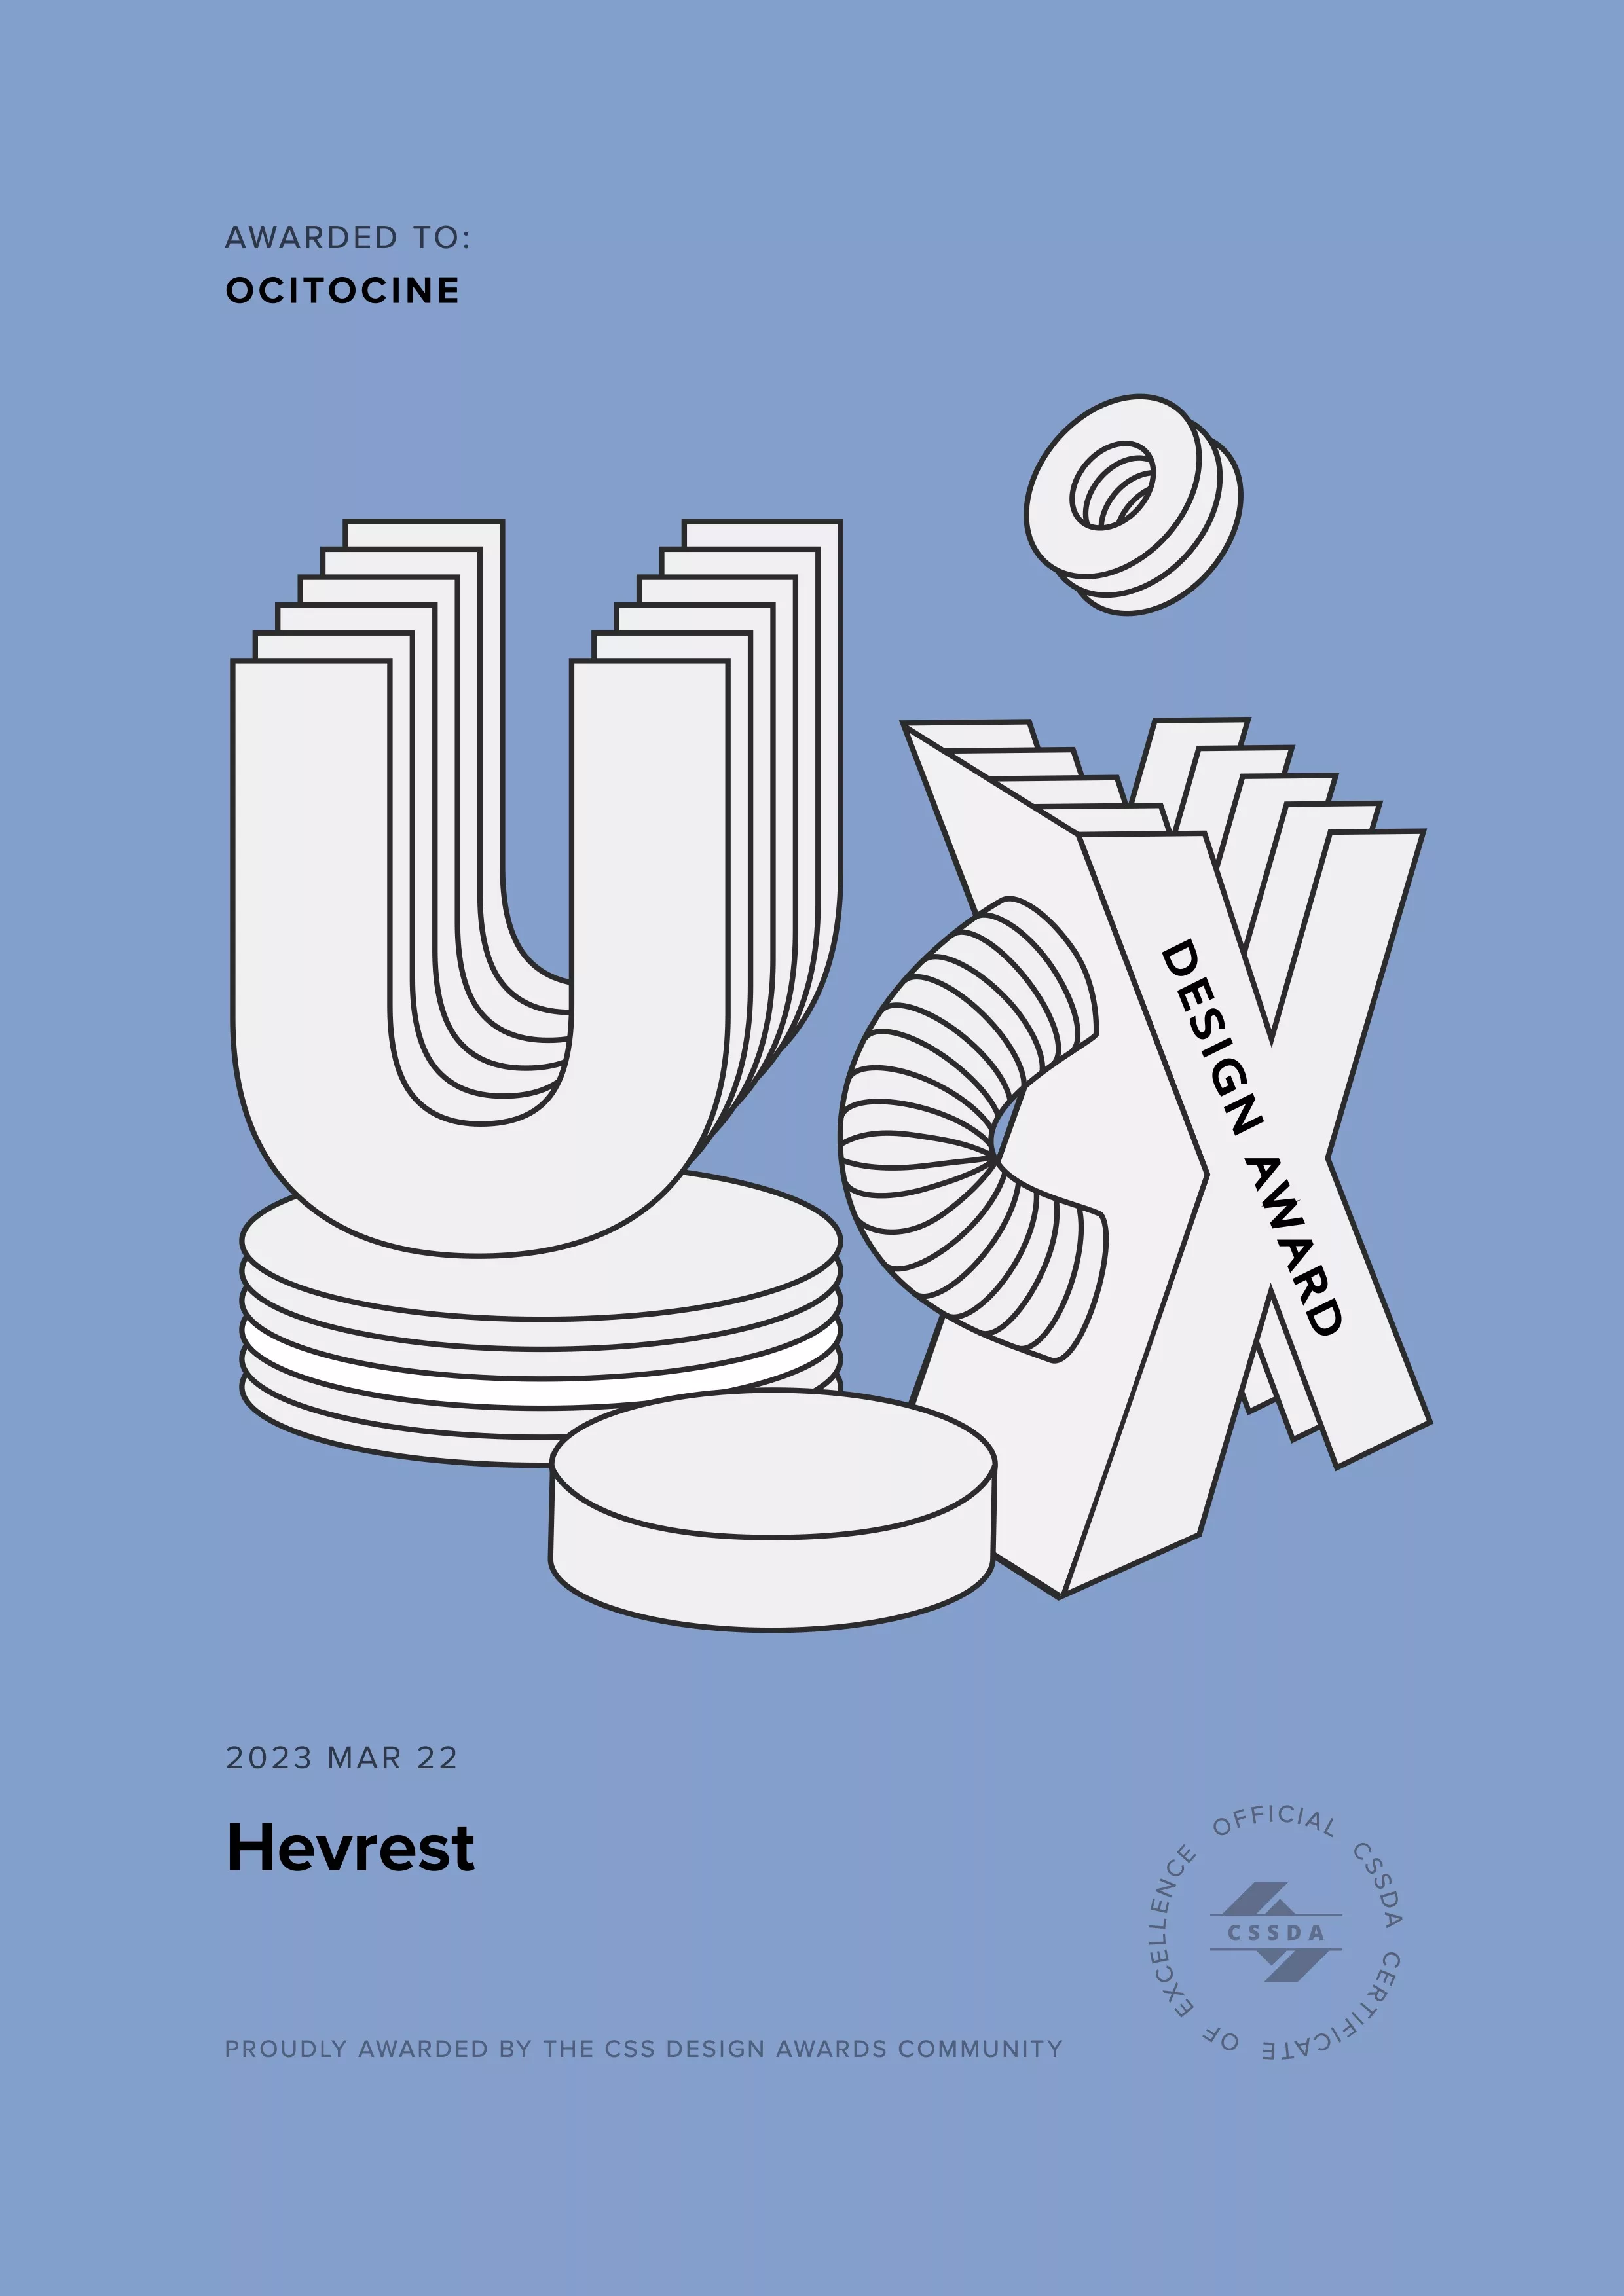 Ocitocine, agence créative web et branding, a remporté un prix "CSSDA UX Design Award" pour la réalisation du site web hevrest.com